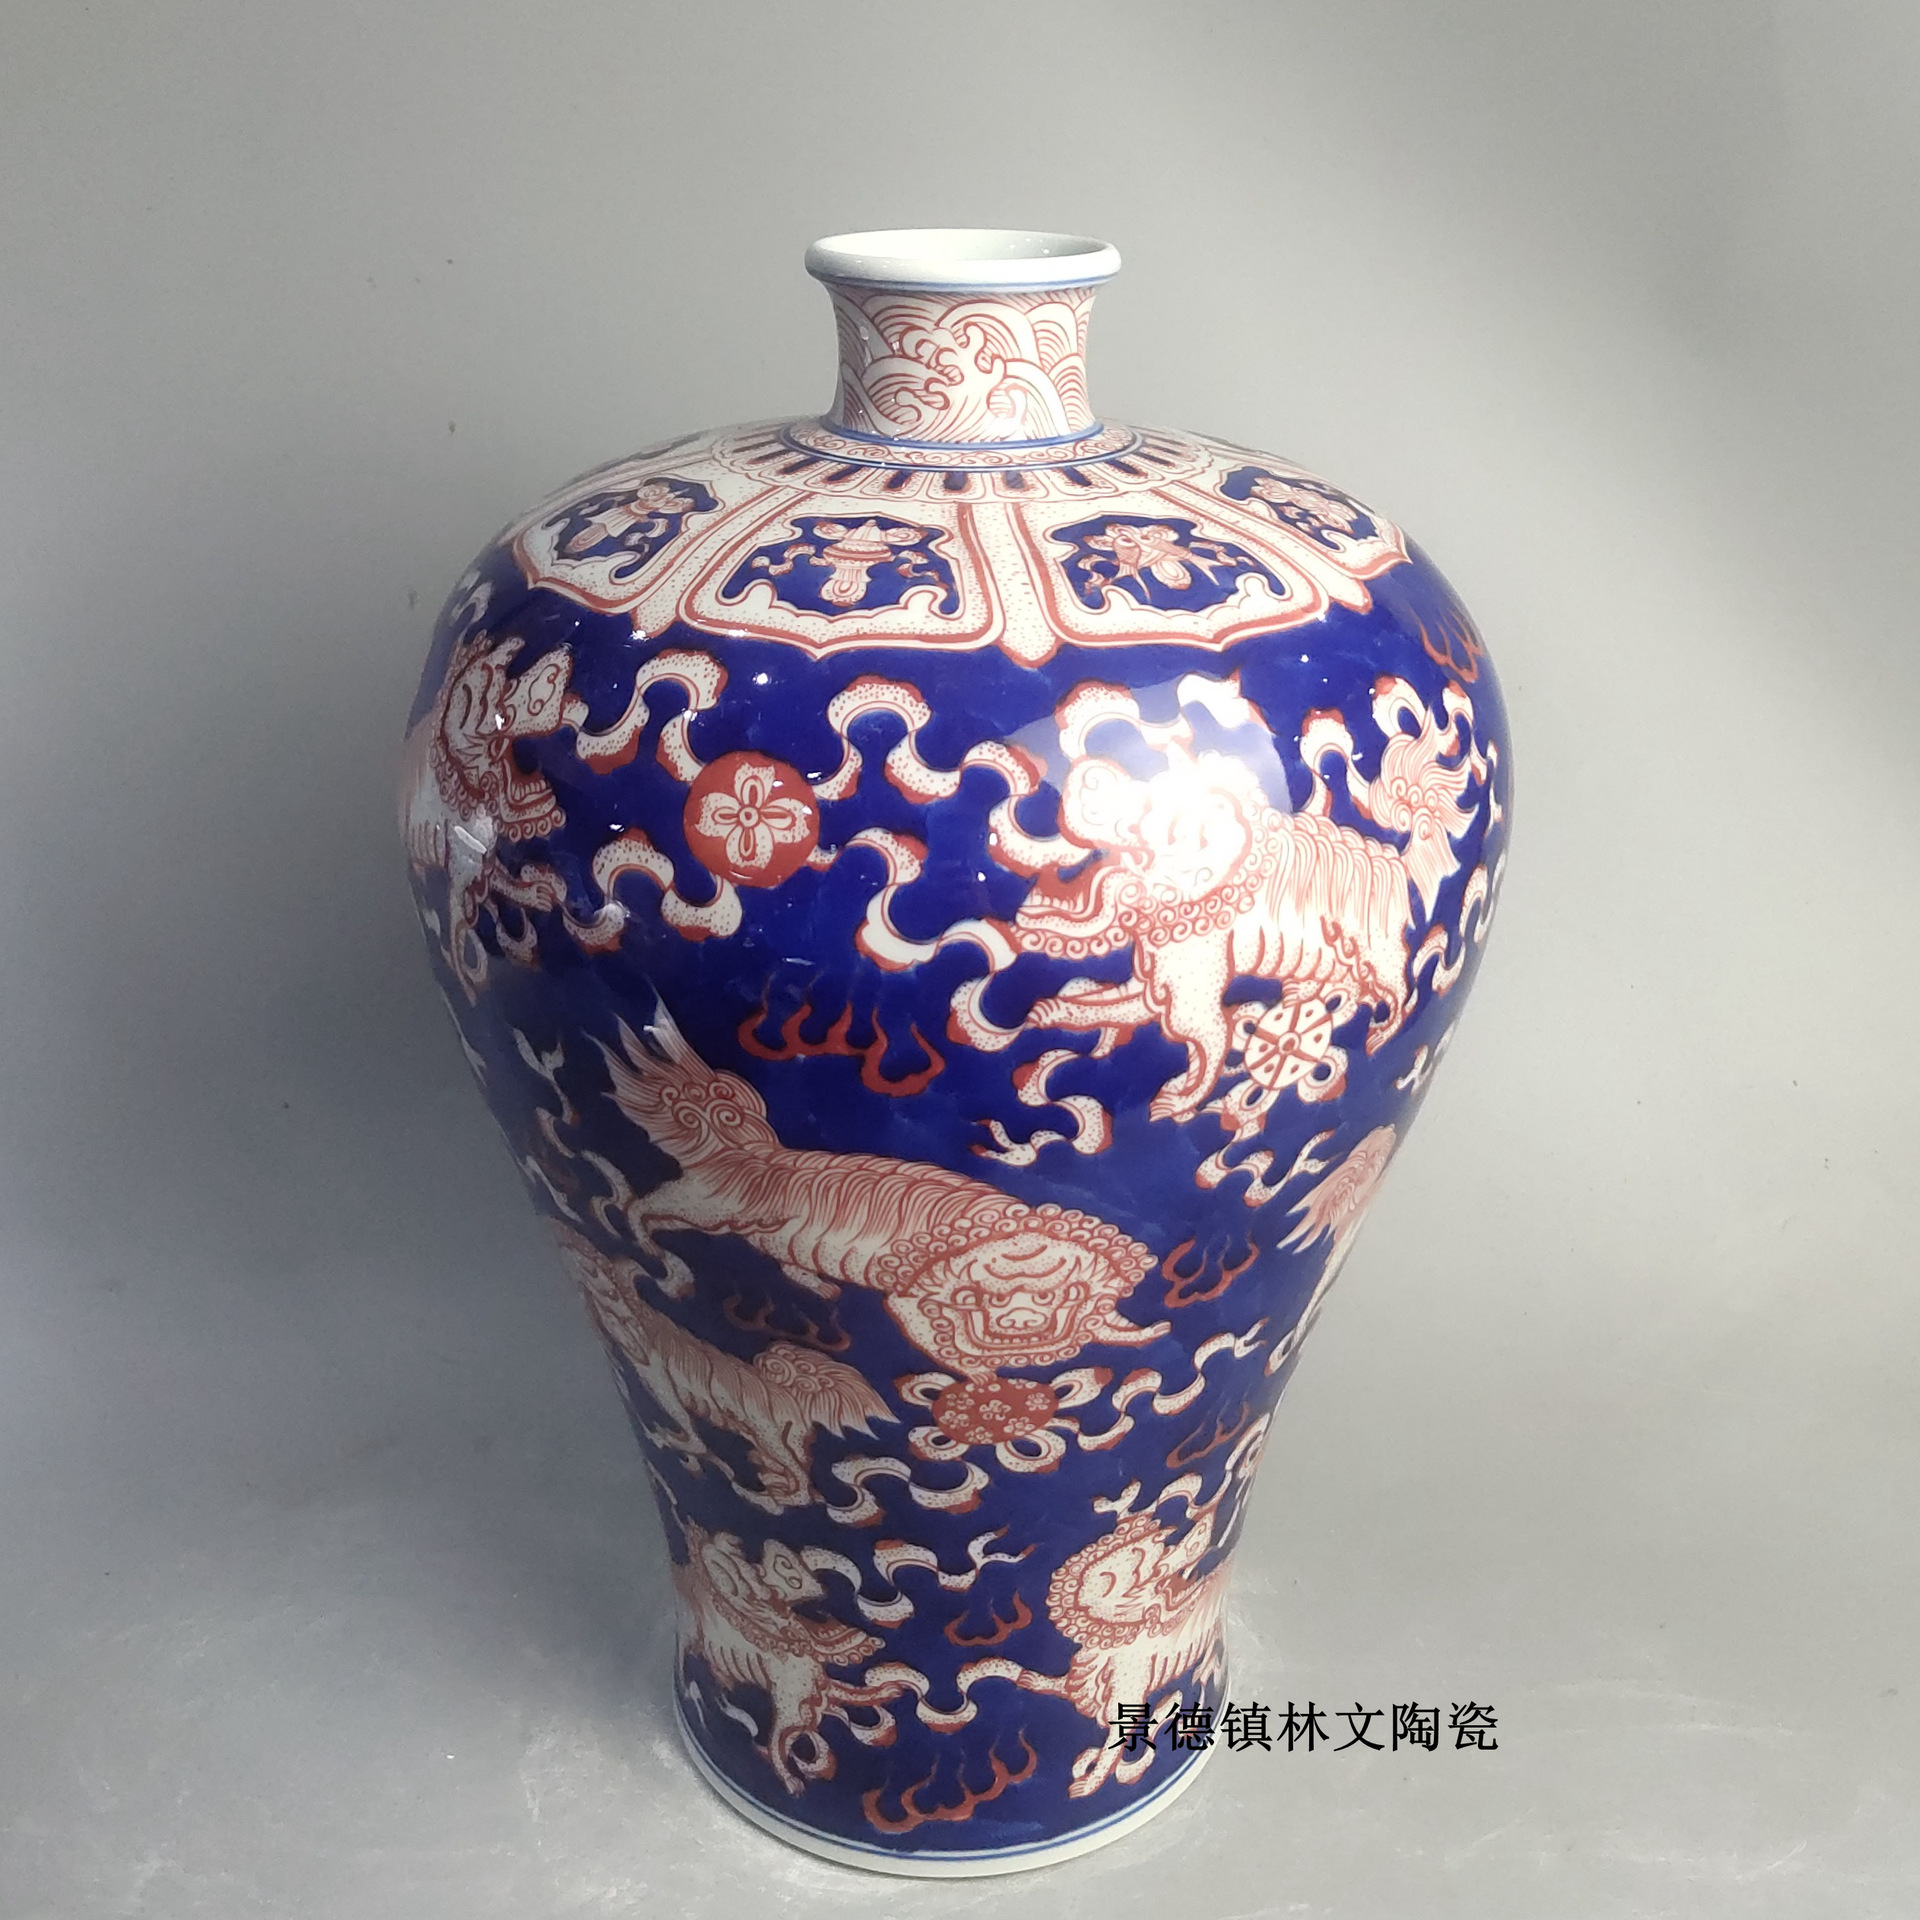 景德镇陶瓷仿古花瓶釉里红兽纹梅瓶纯手绘精品瓷器制定收藏装